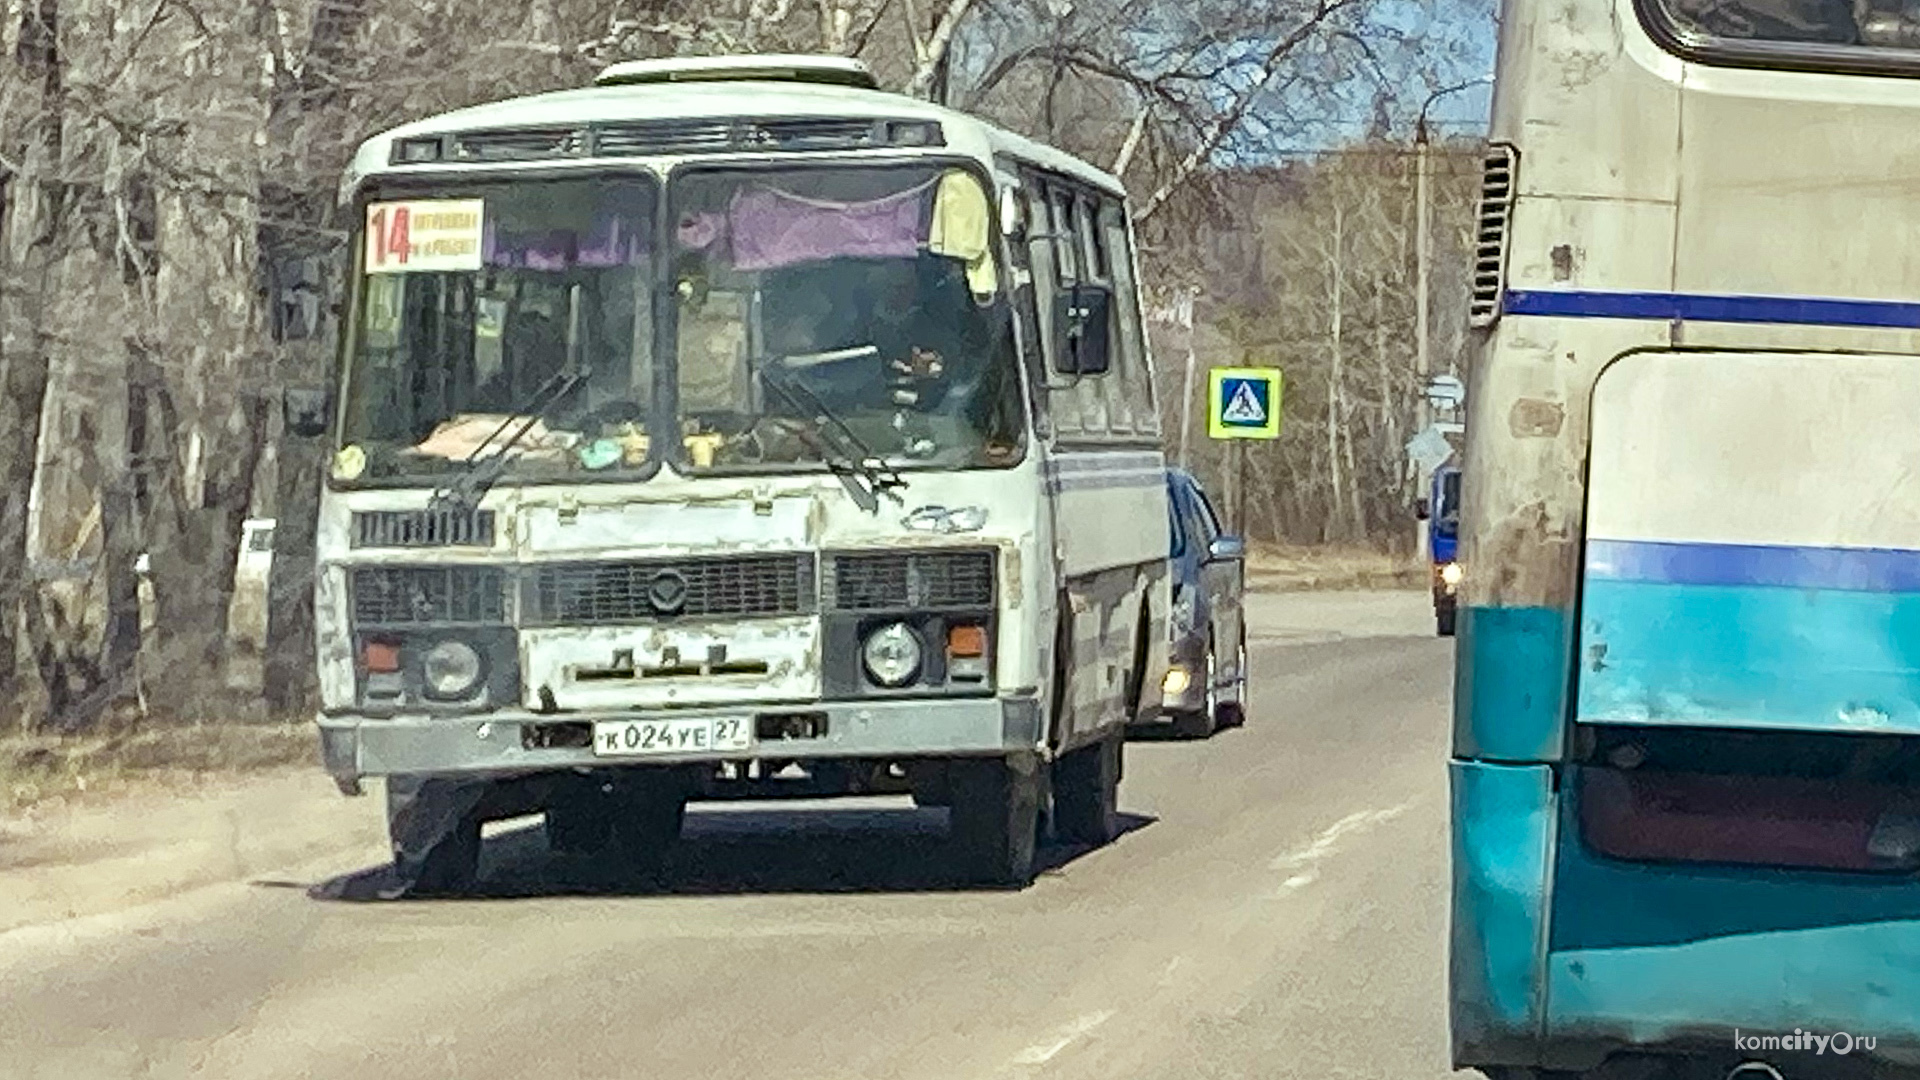 В Комсомольске-на-Амуре ликвидируют три автобусных маршрута